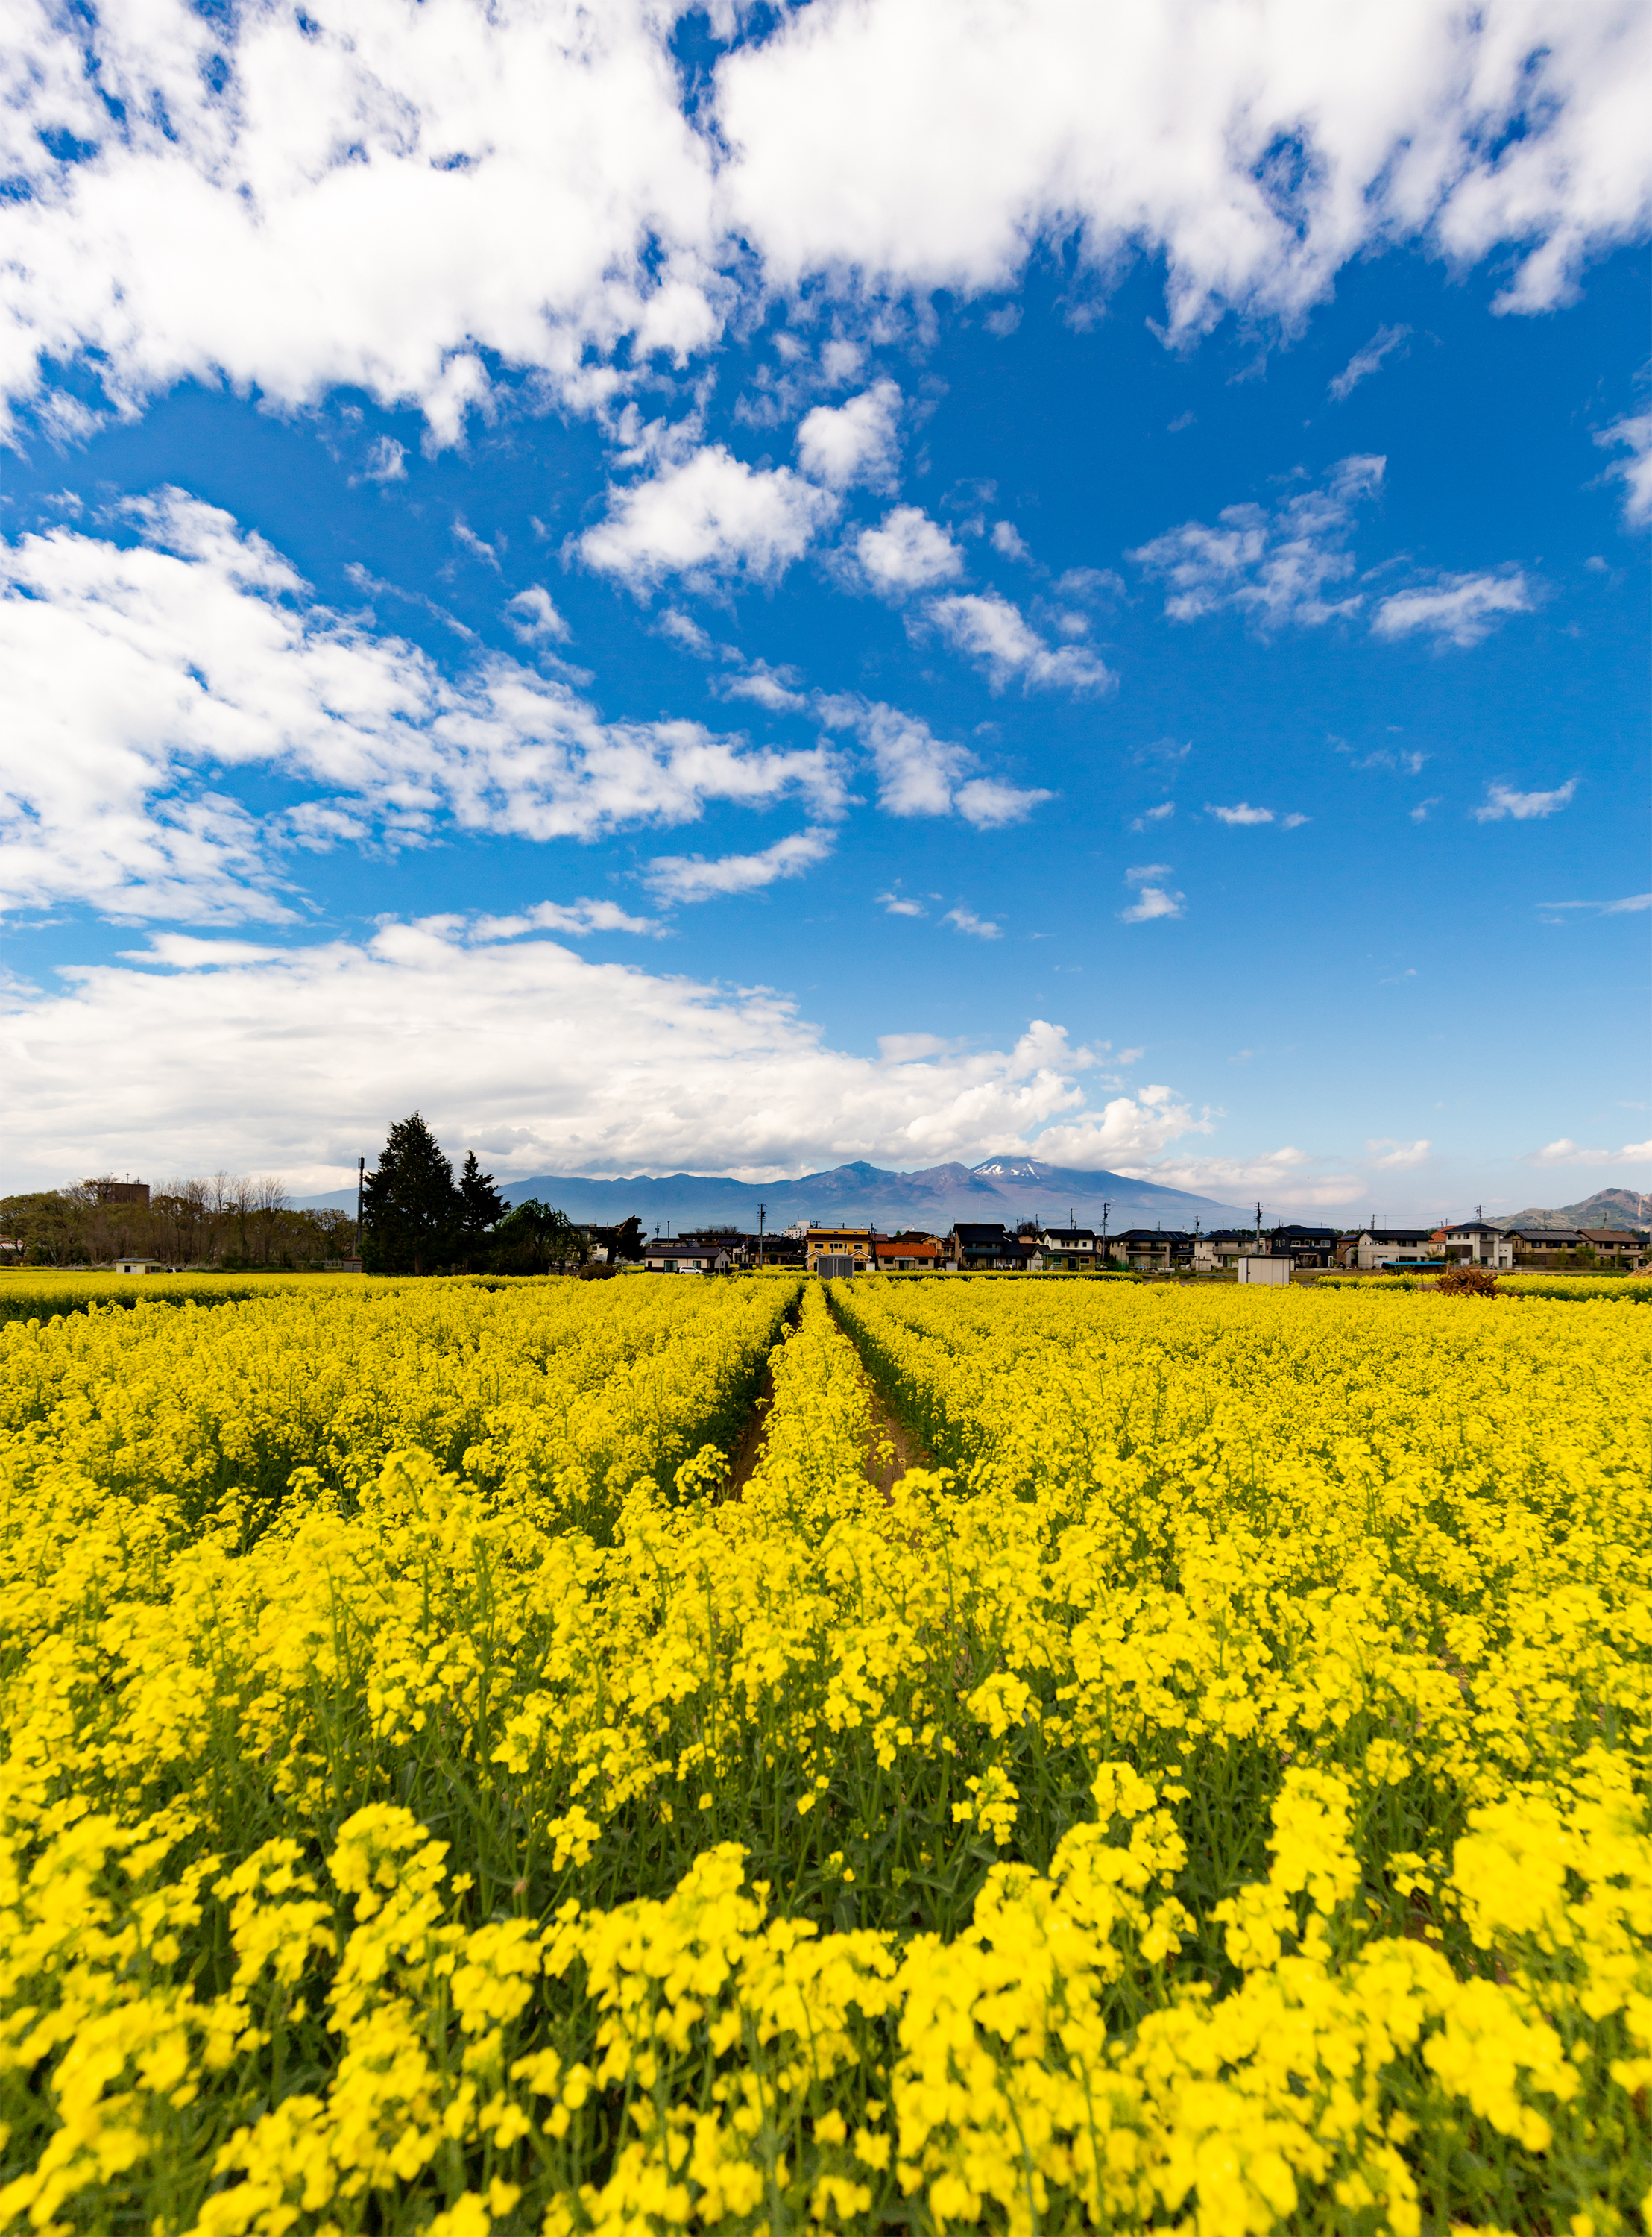 ダイナミックな空と一面の菜の花畑 無料の高画質フリー写真素材 イメージズラボ